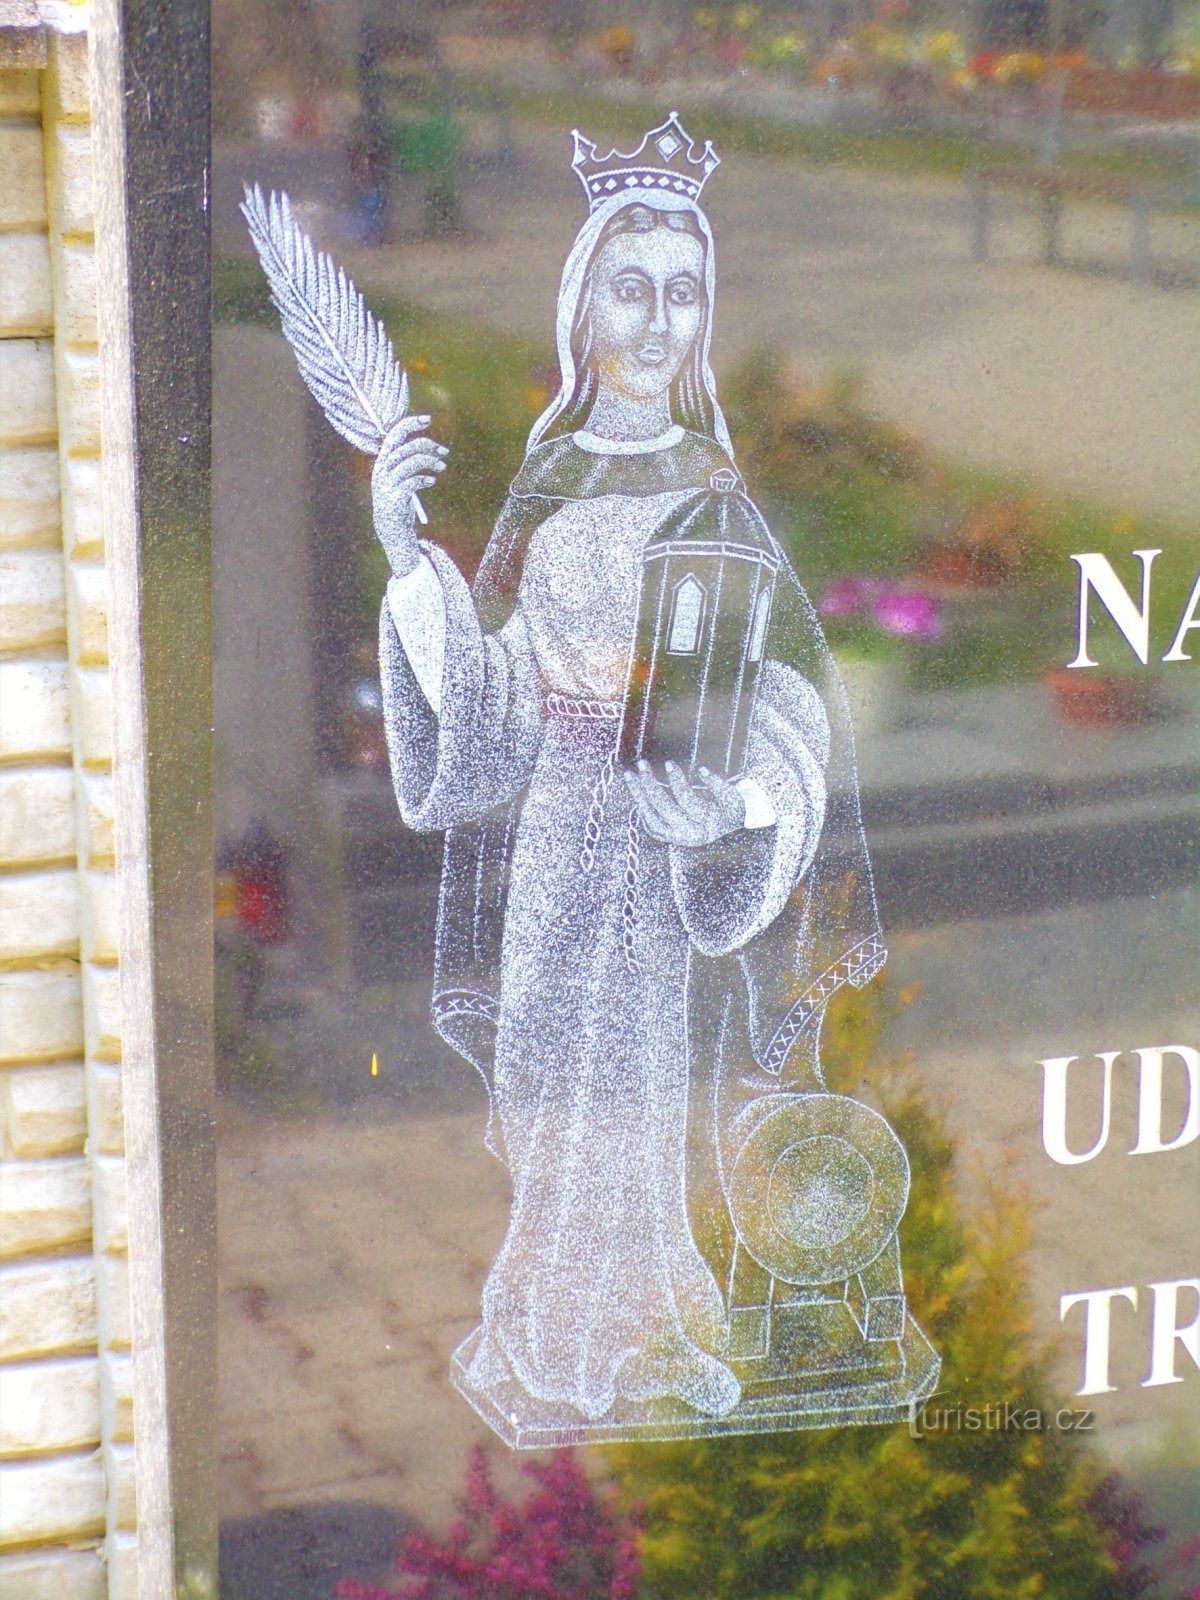 Деталь изображения св. Варвара на памятнике жертвам трагических событий во время постановки т.